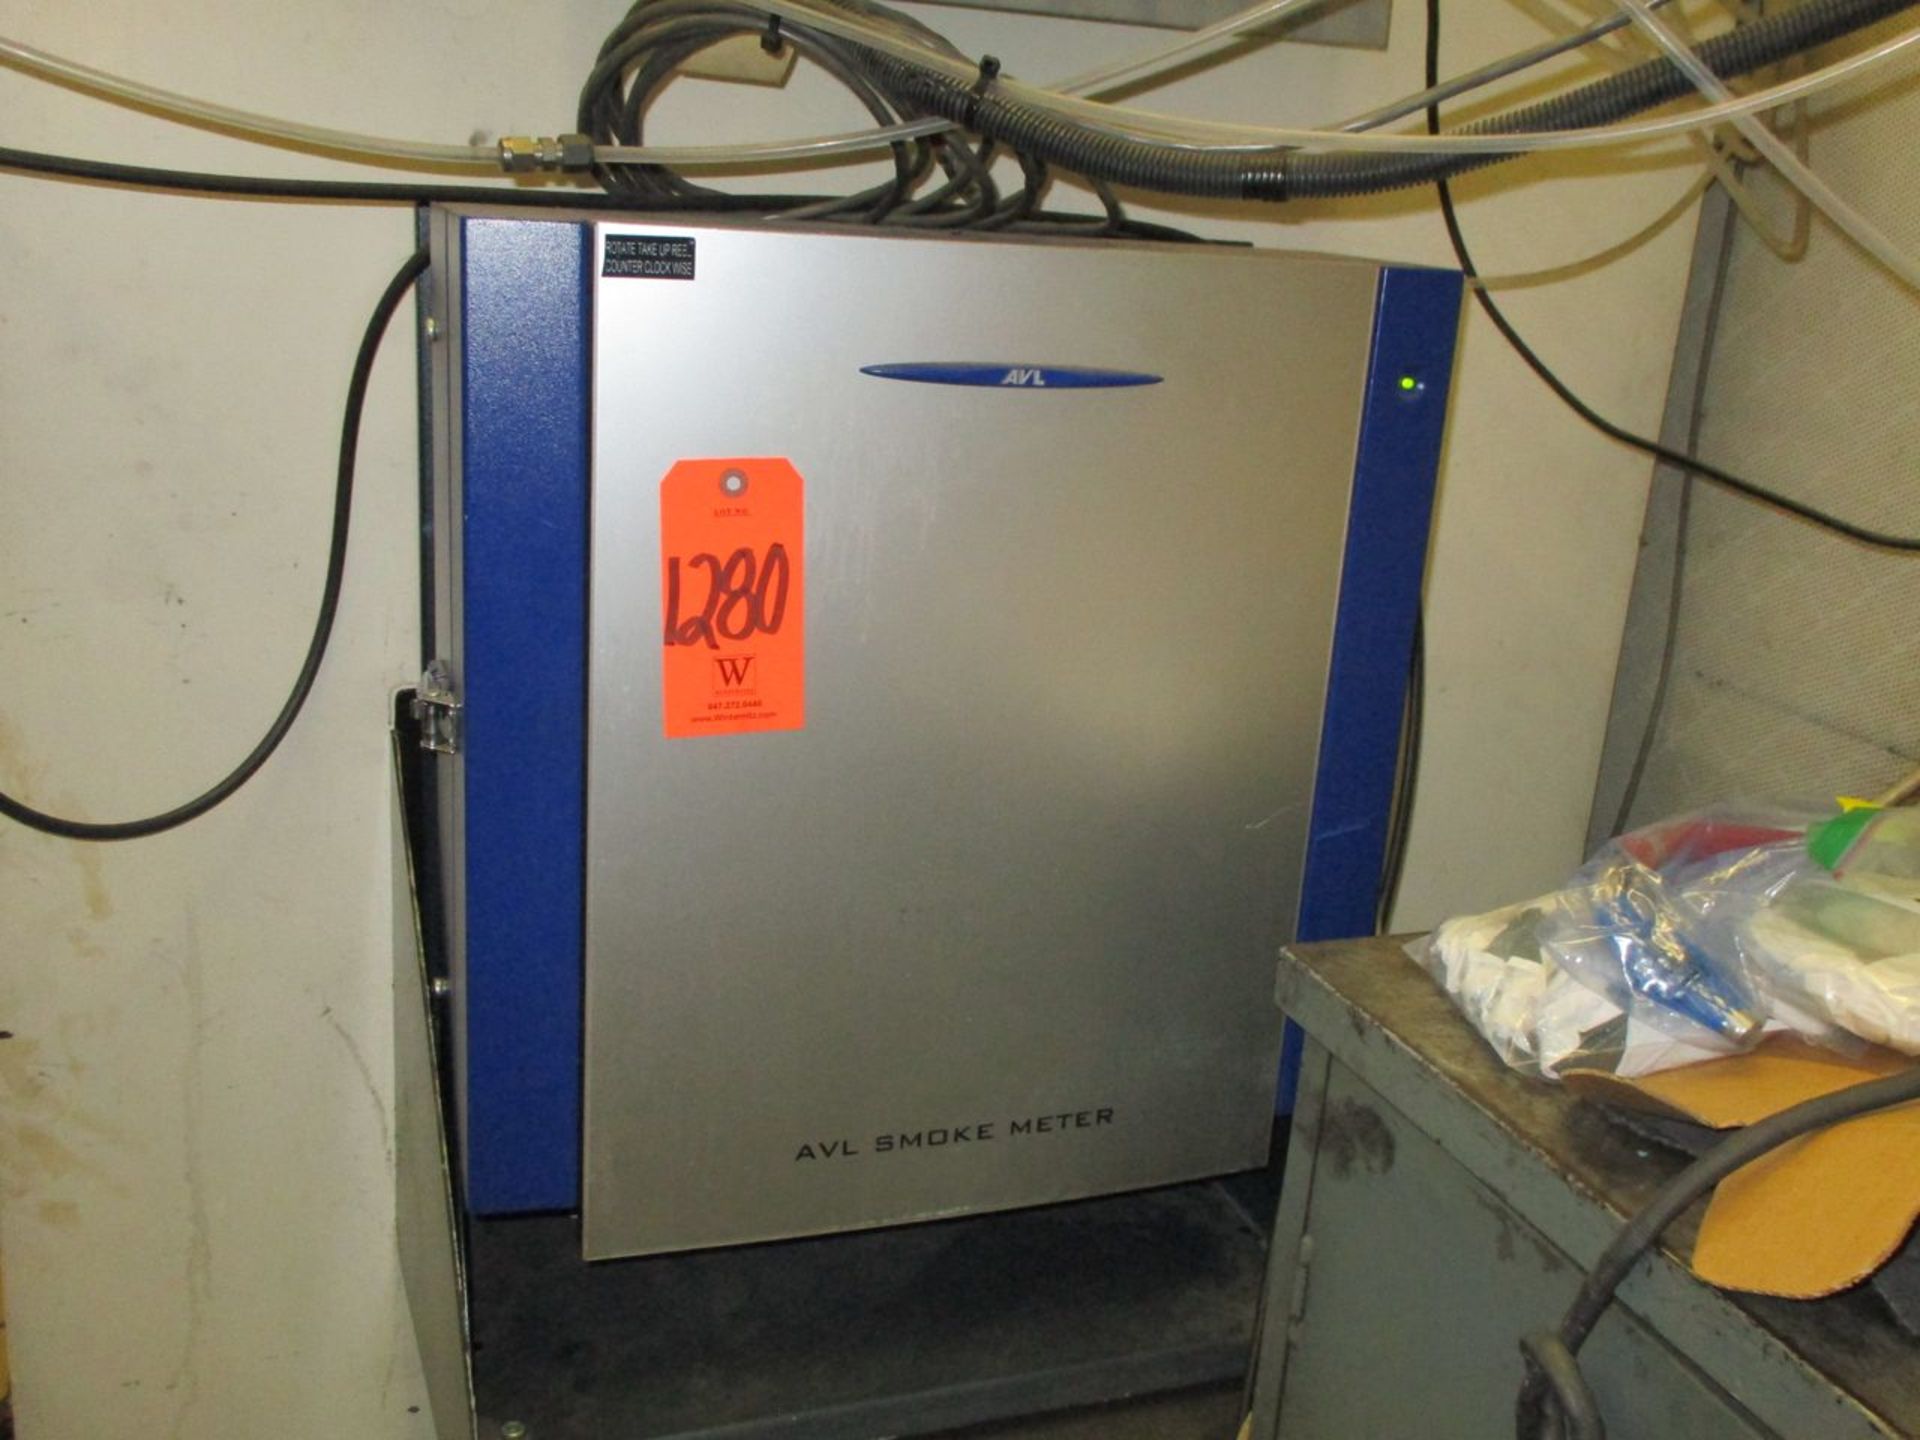 AVL 415S-G002 Smoke Meter, S/N 5665 (MP40027) (Cell 41)